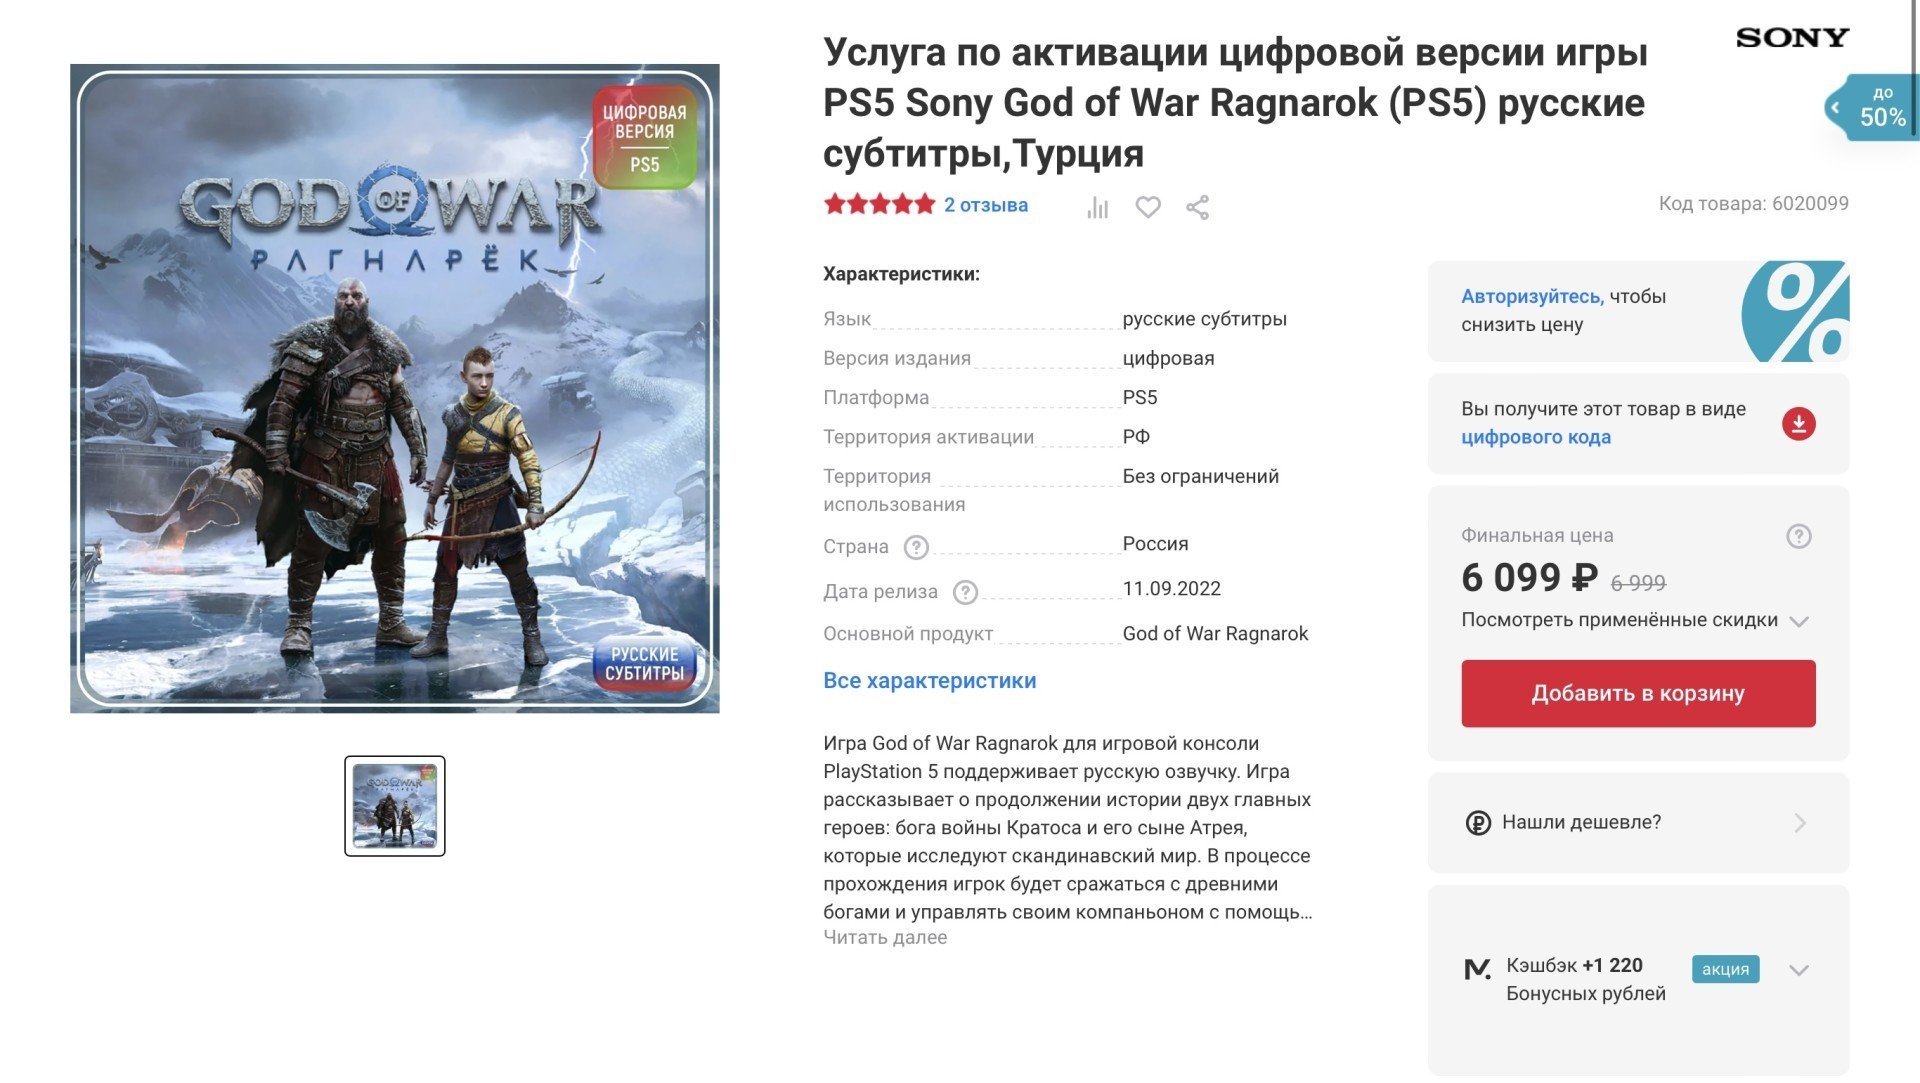 Активация God of War Ragnarok в российском магазине неприятно удивила геймеров ценой